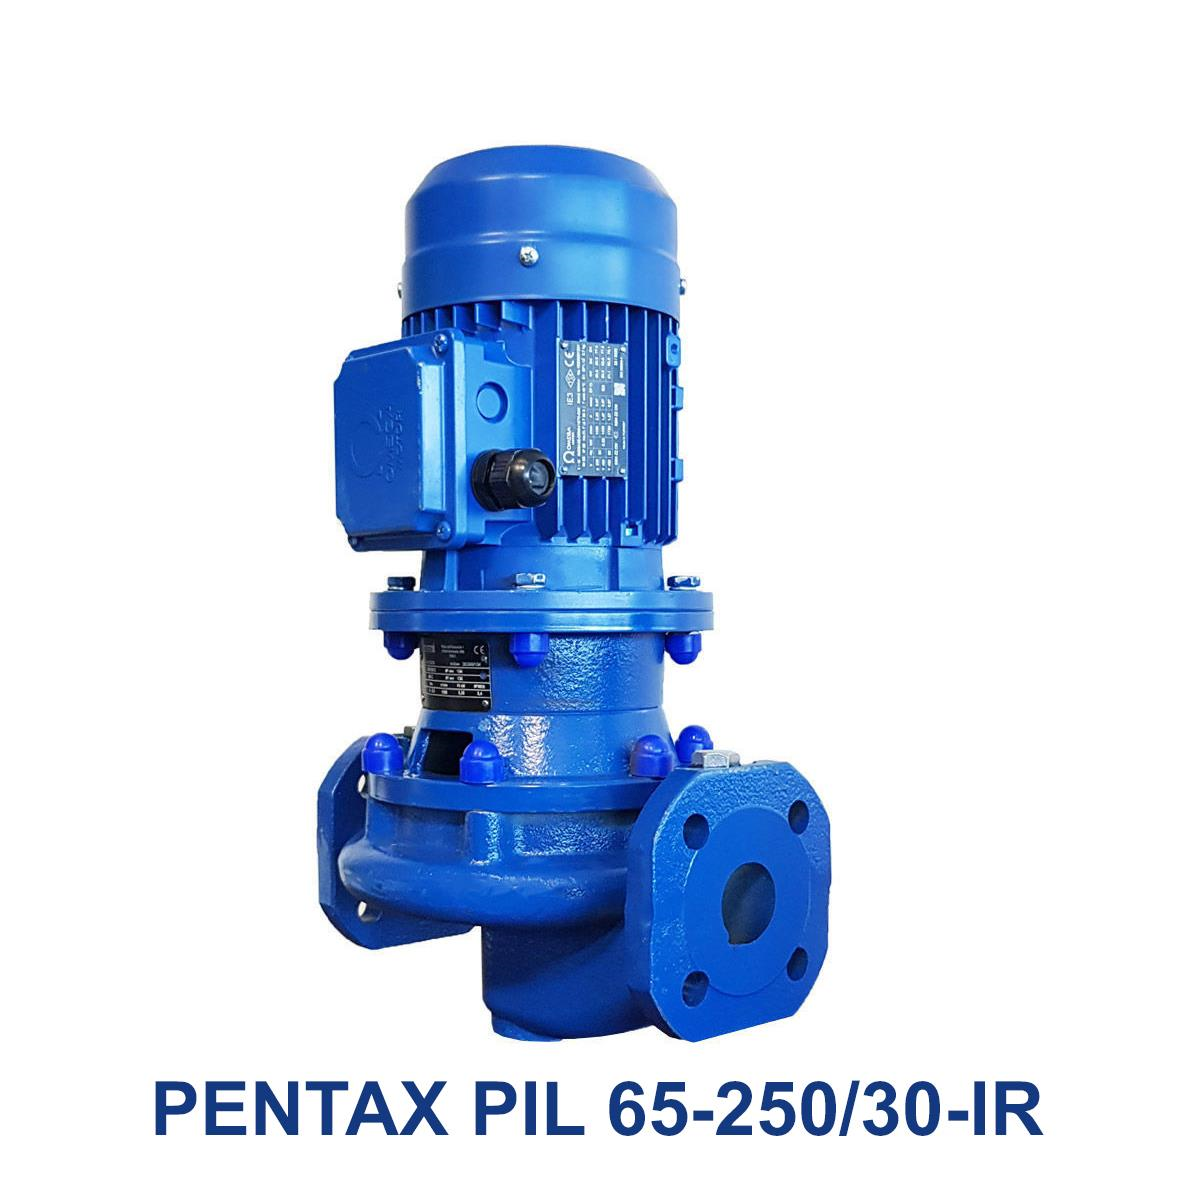 PENTAX-PIL-65-250-30-IR